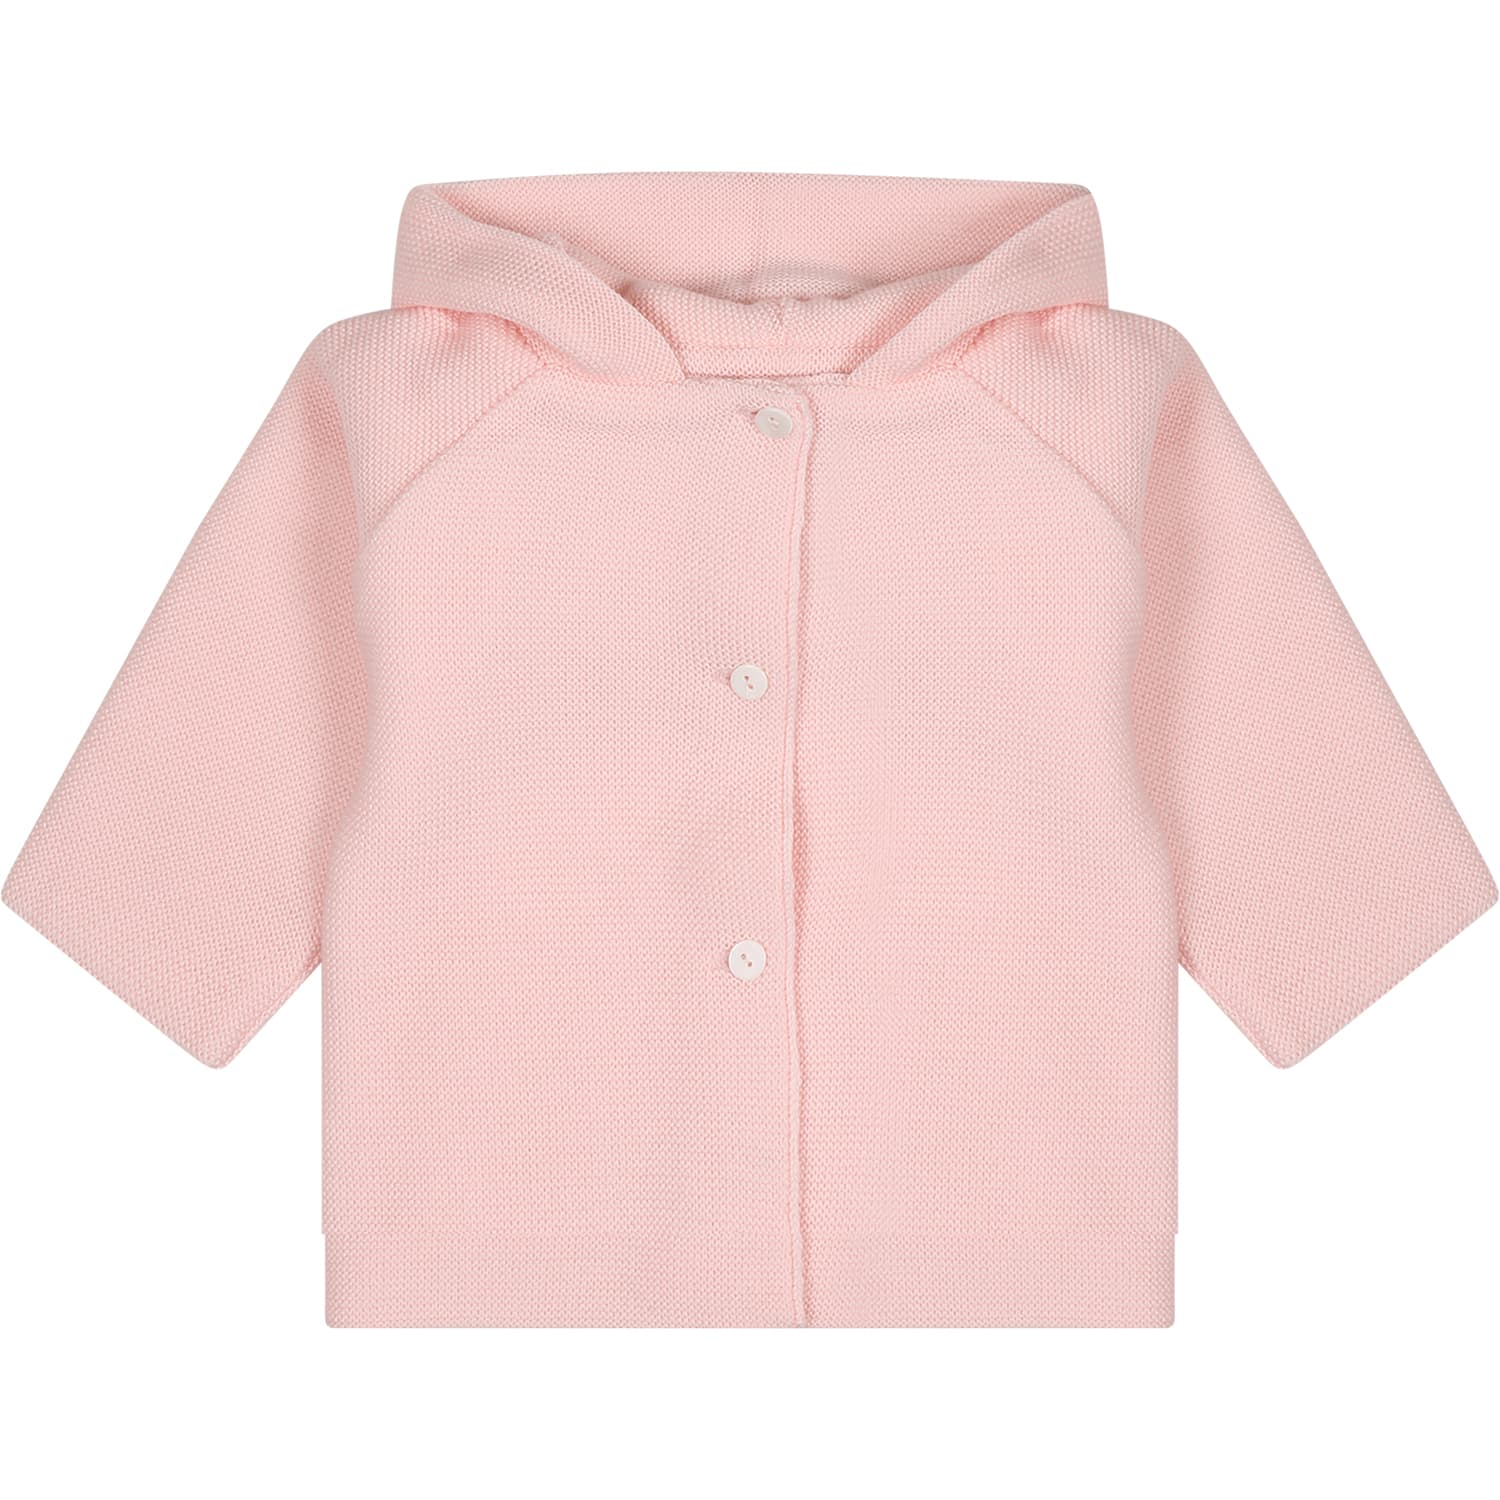 Little Bear Pink Coat For Baby Girl